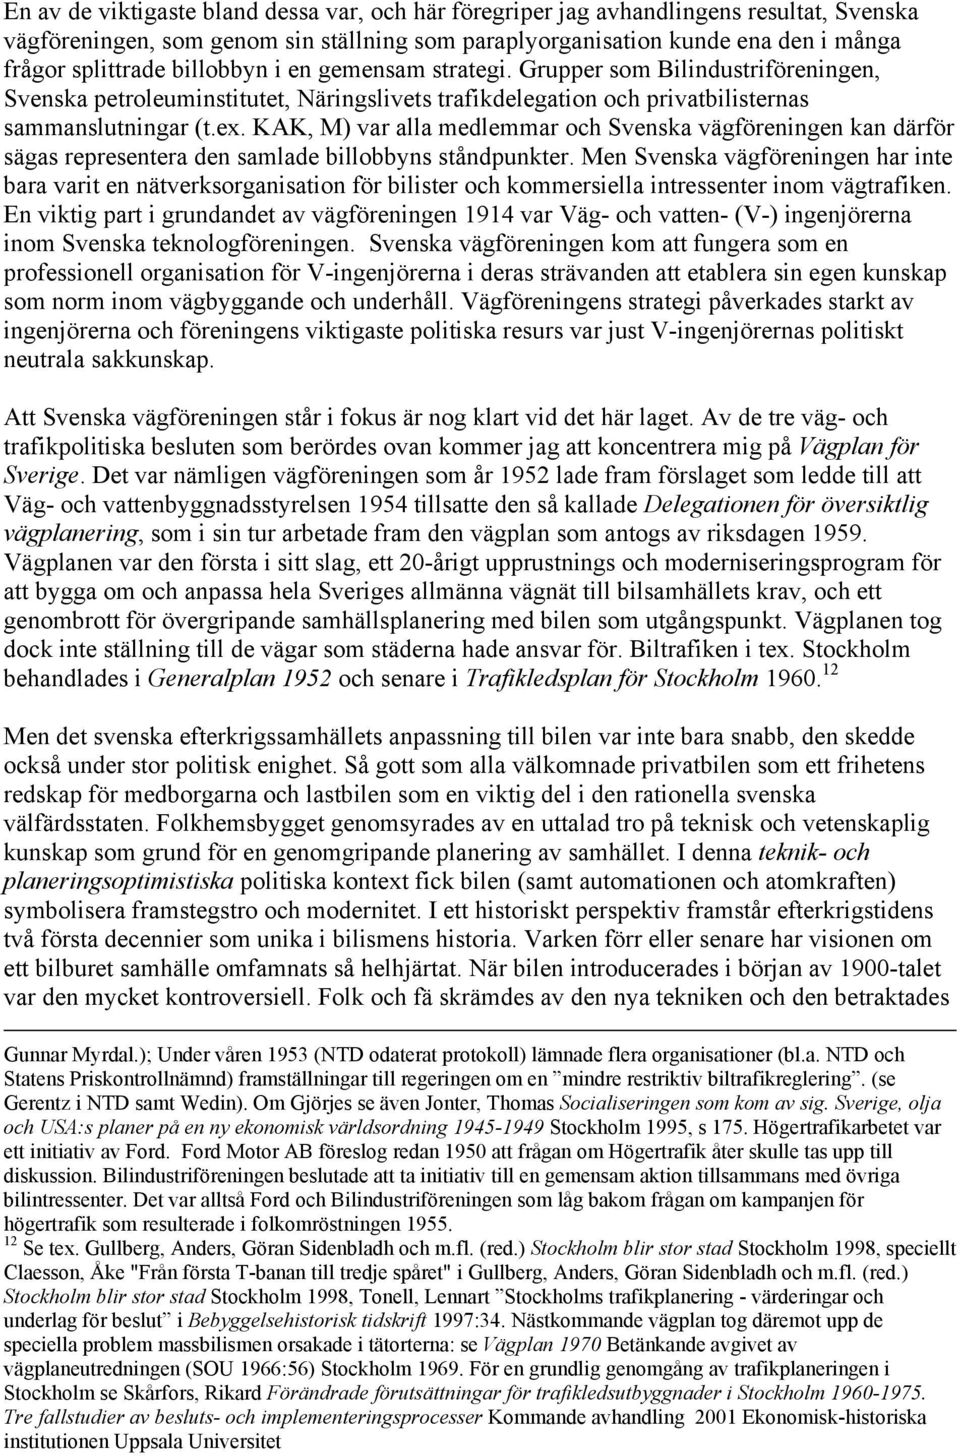 KAK, M) var alla medlemmar och Svenska vägföreningen kan därför sägas representera den samlade billobbyns ståndpunkter.